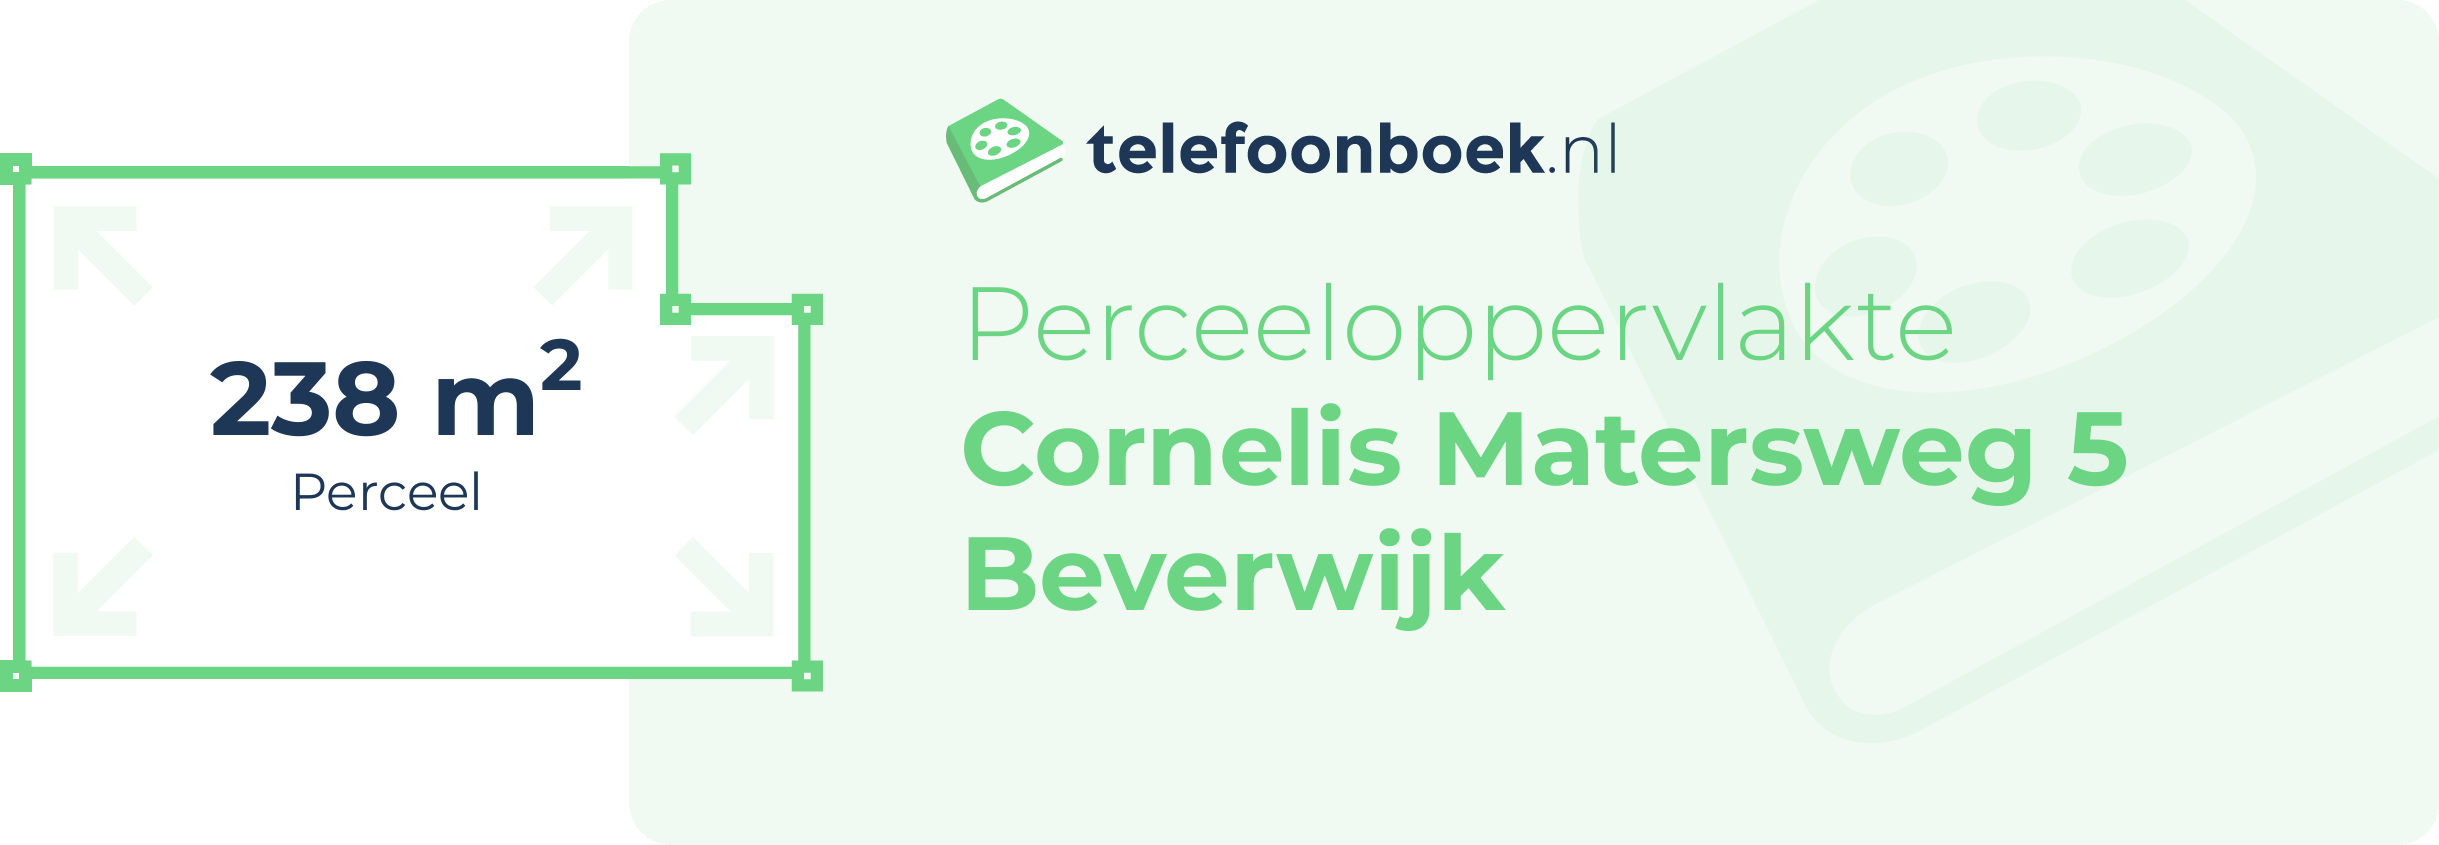 Perceeloppervlakte Cornelis Matersweg 5 Beverwijk